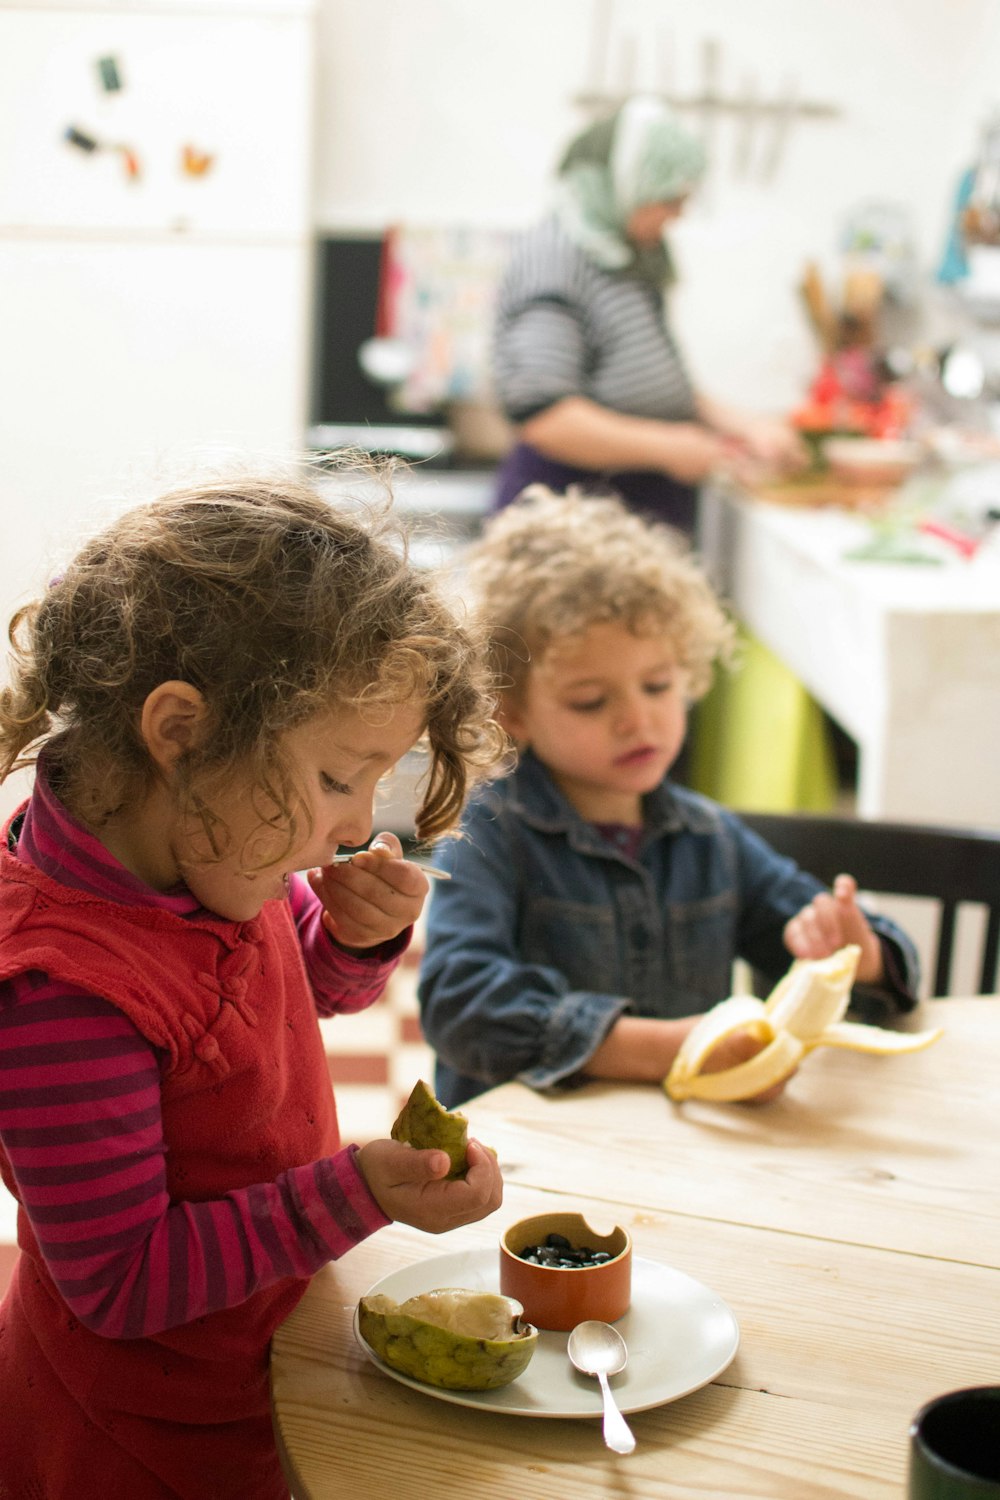 30k+ Fotos de Niños Comiendo | Descargar imágenes gratis en Unsplash